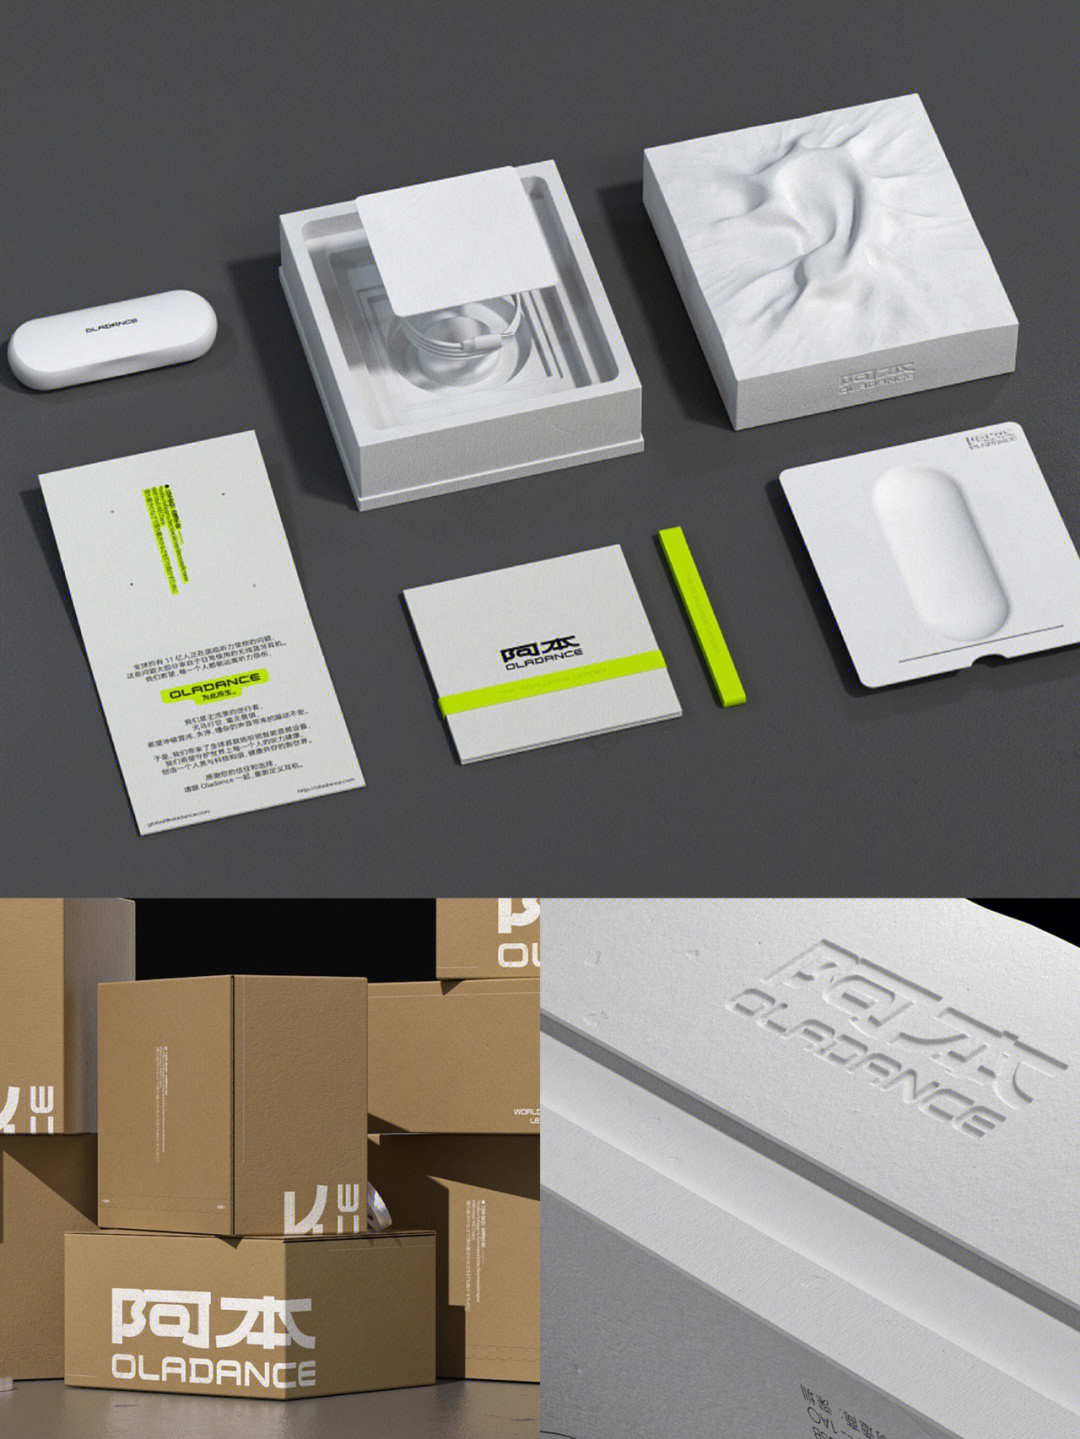 设计项目:耳机品牌包装设计设计师:matin studio设计理念:包装基于